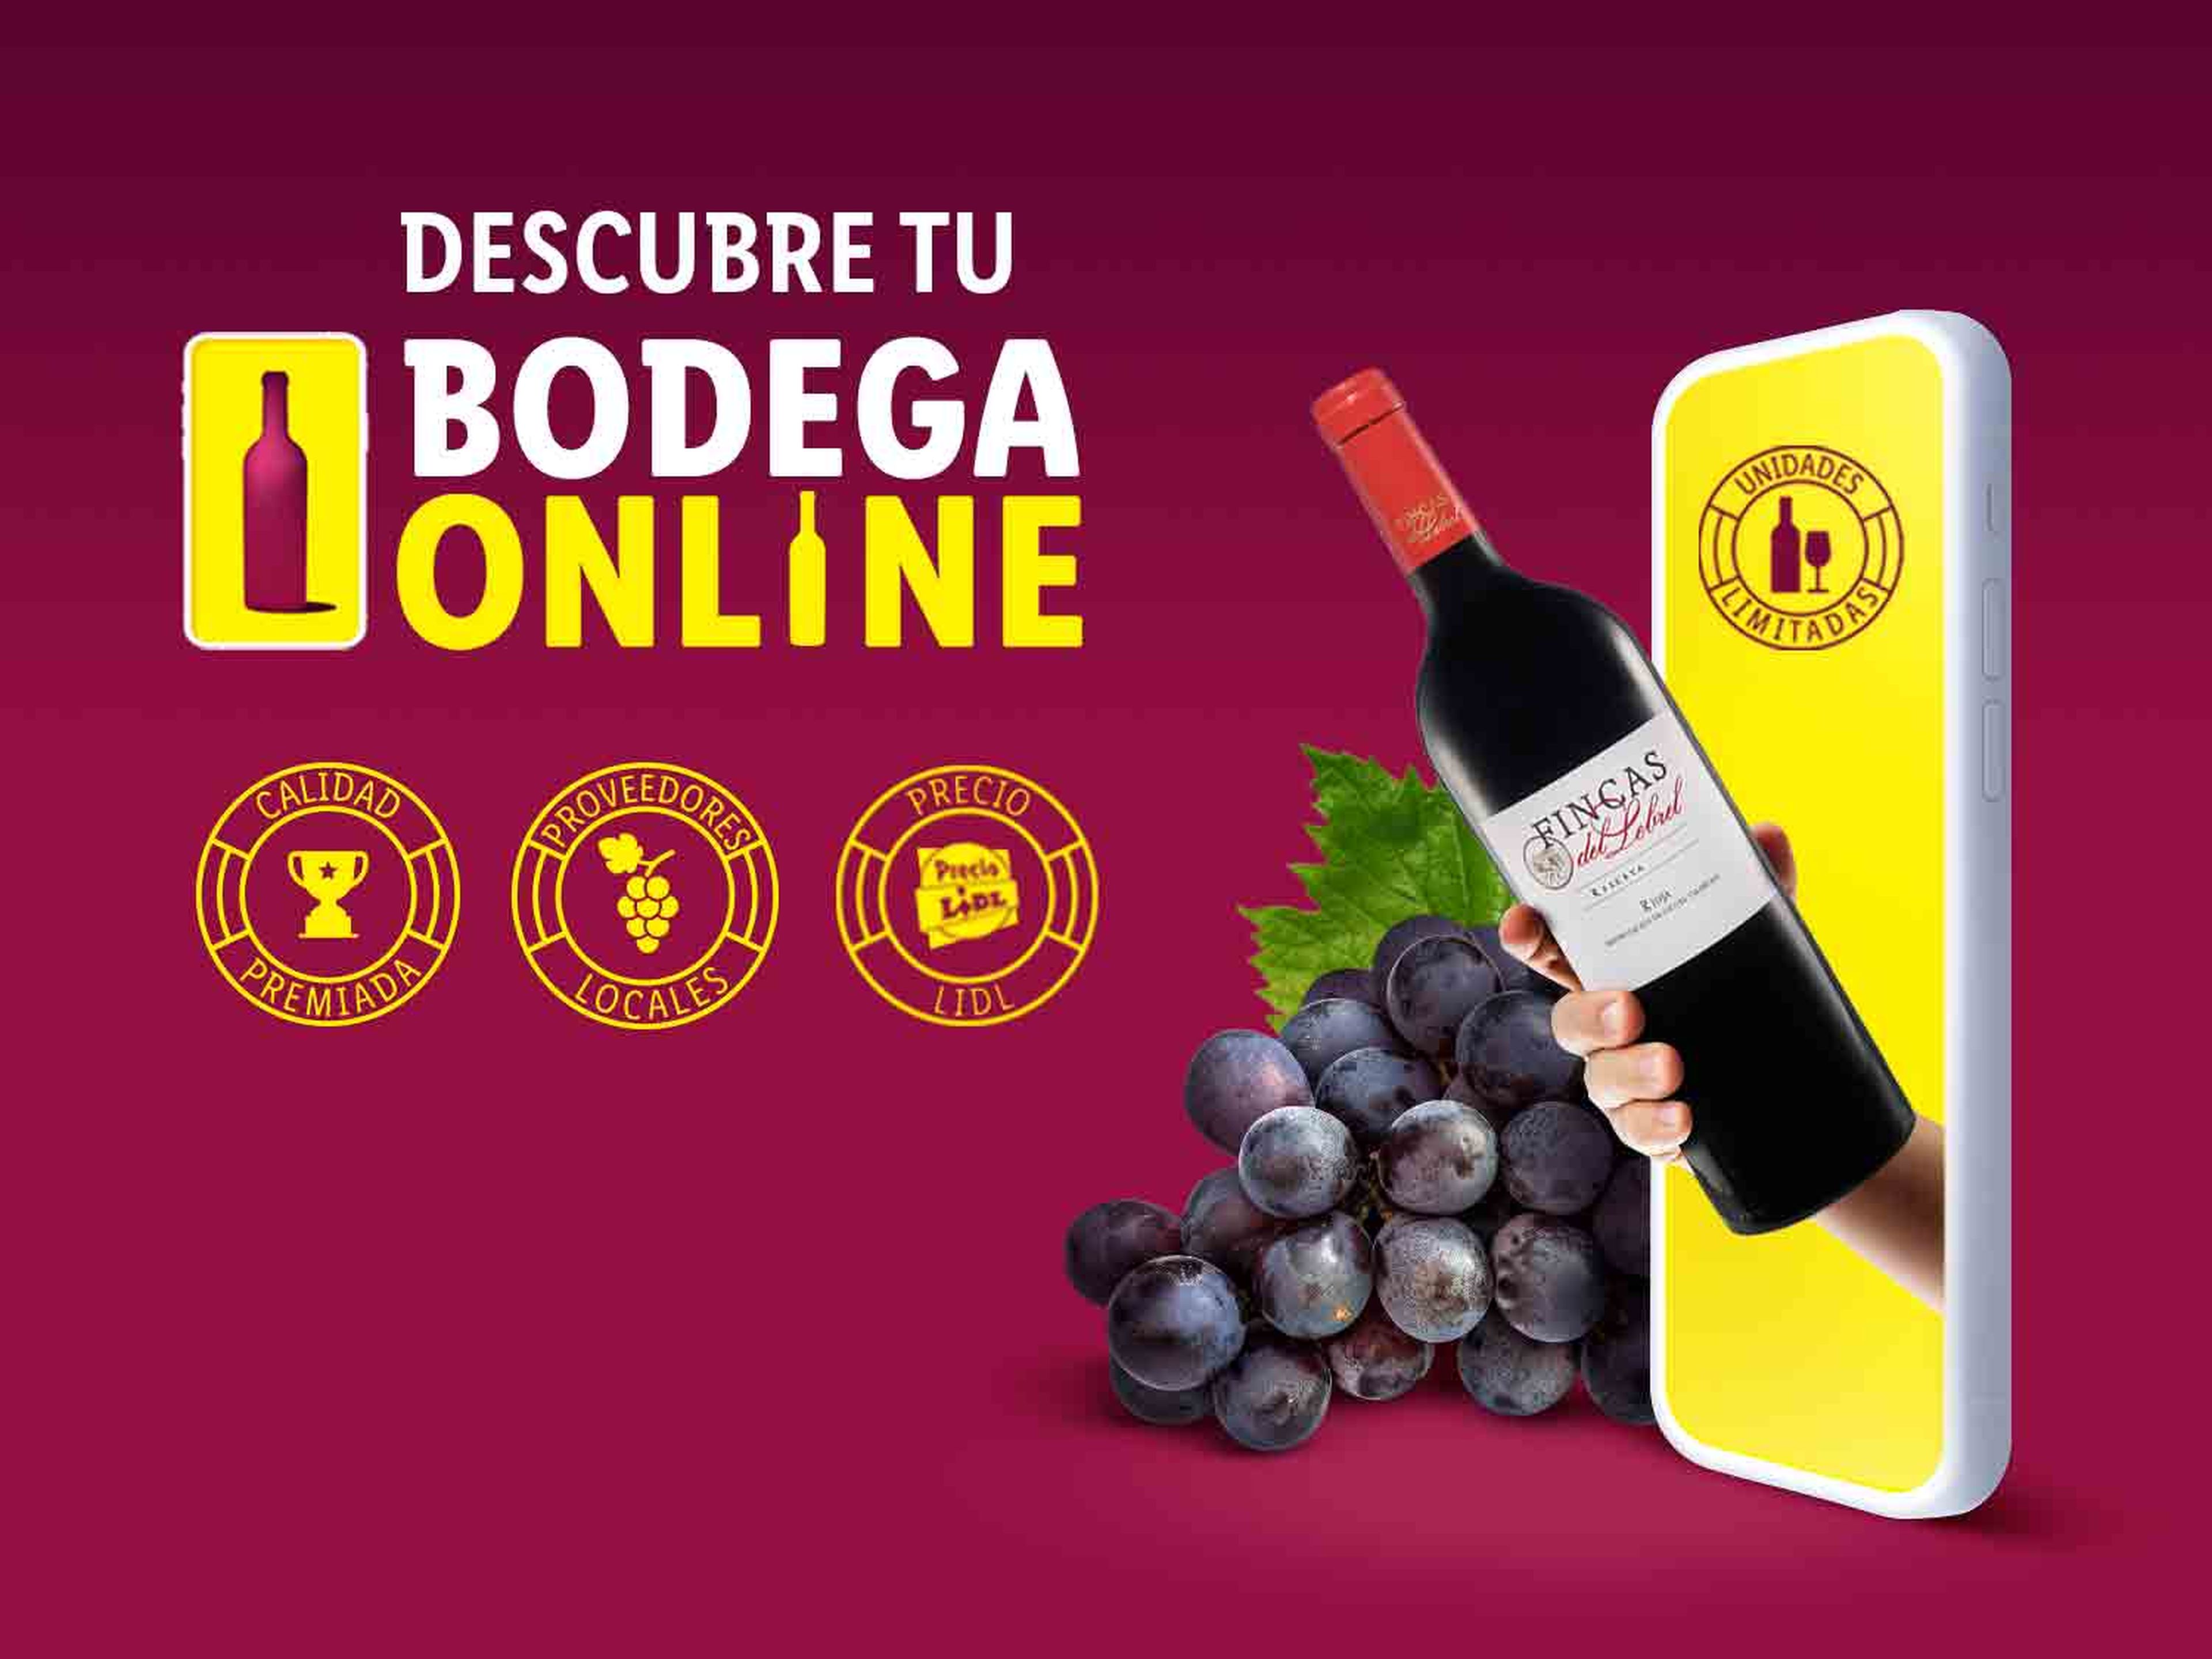 Los mejores vinos y accesorios en Bodega Online de Lidl. 